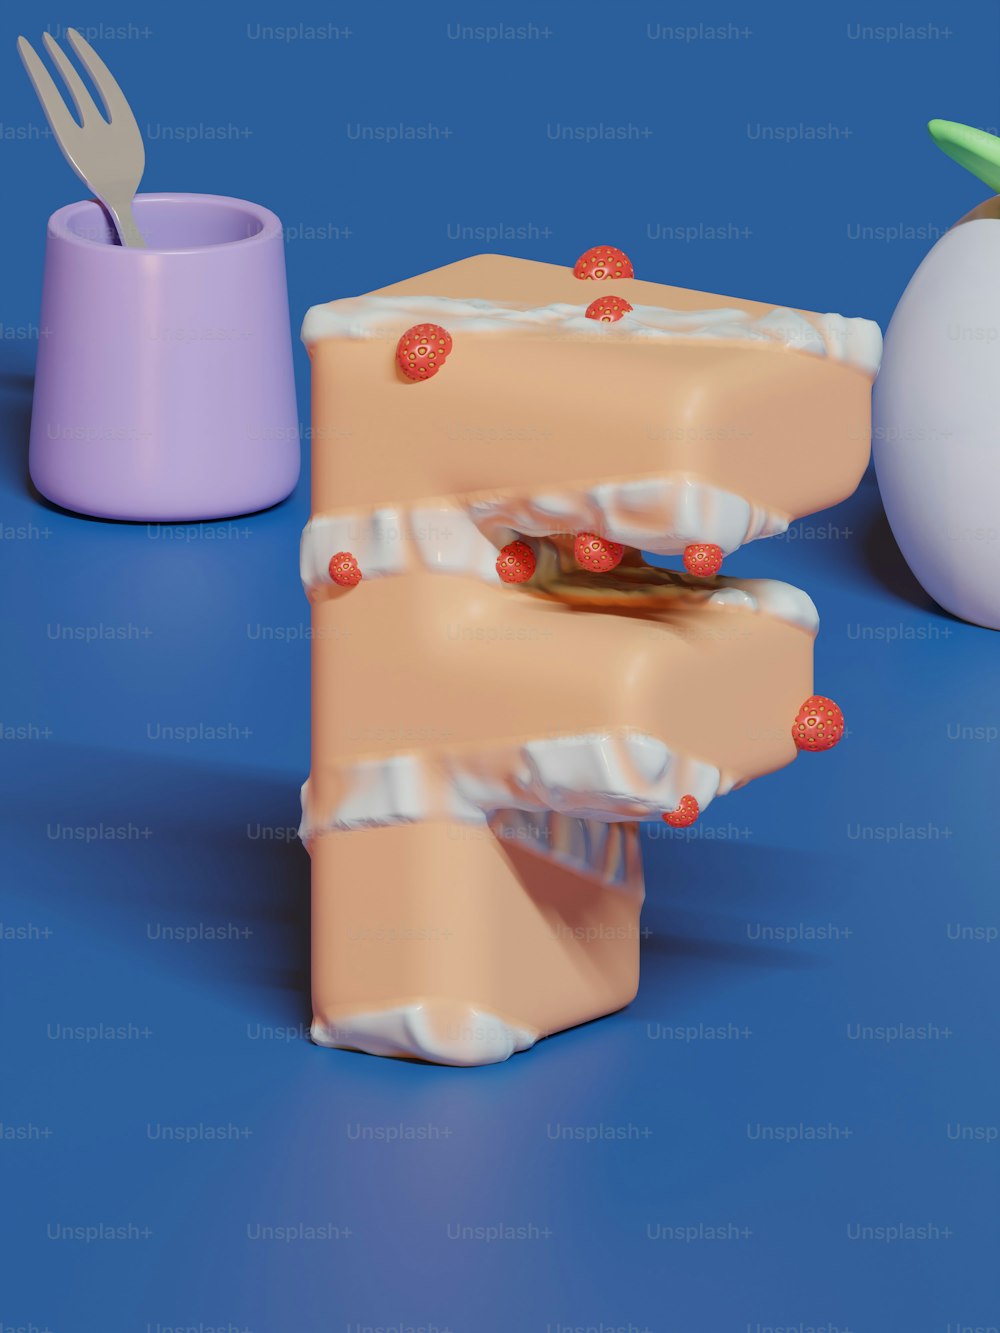 Ein 3D-Modell eines Stücks Kuchen, aus dem eine Gabel herausragt